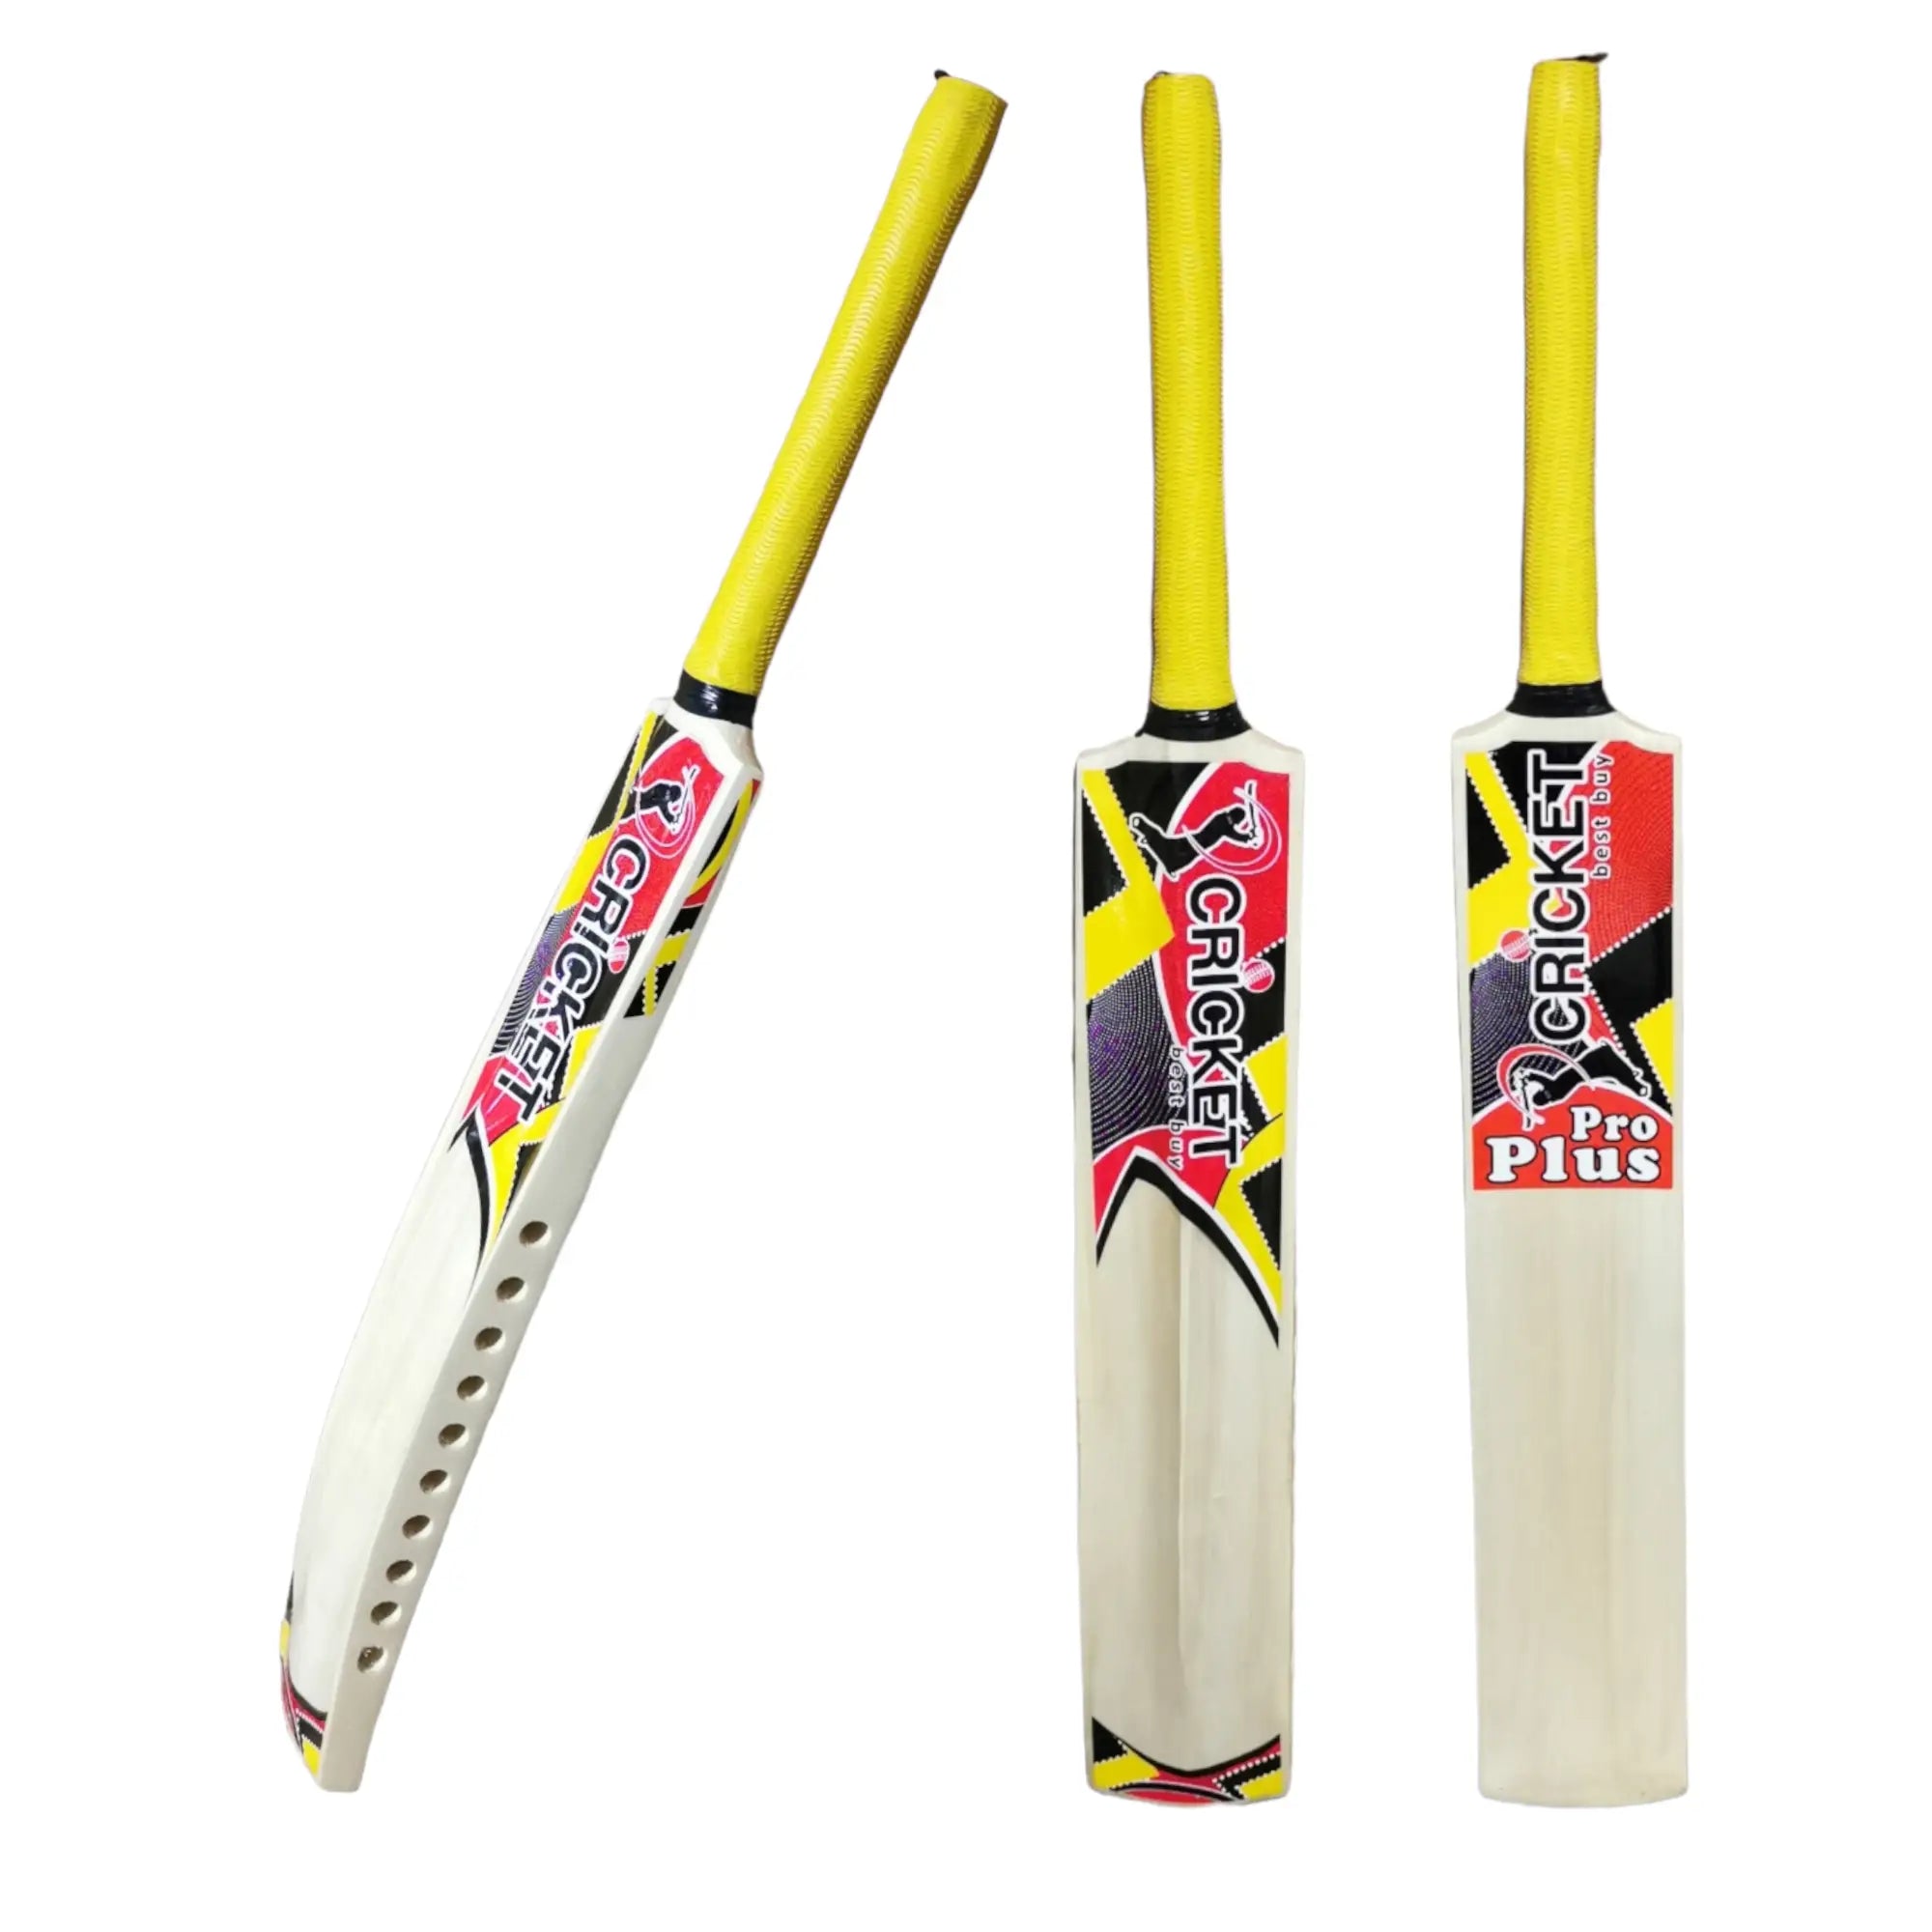 CBB Pro Plus Cricket Bat Lightweight for Tape Tennis Softball Bat Men - BATS - SOFTBALL